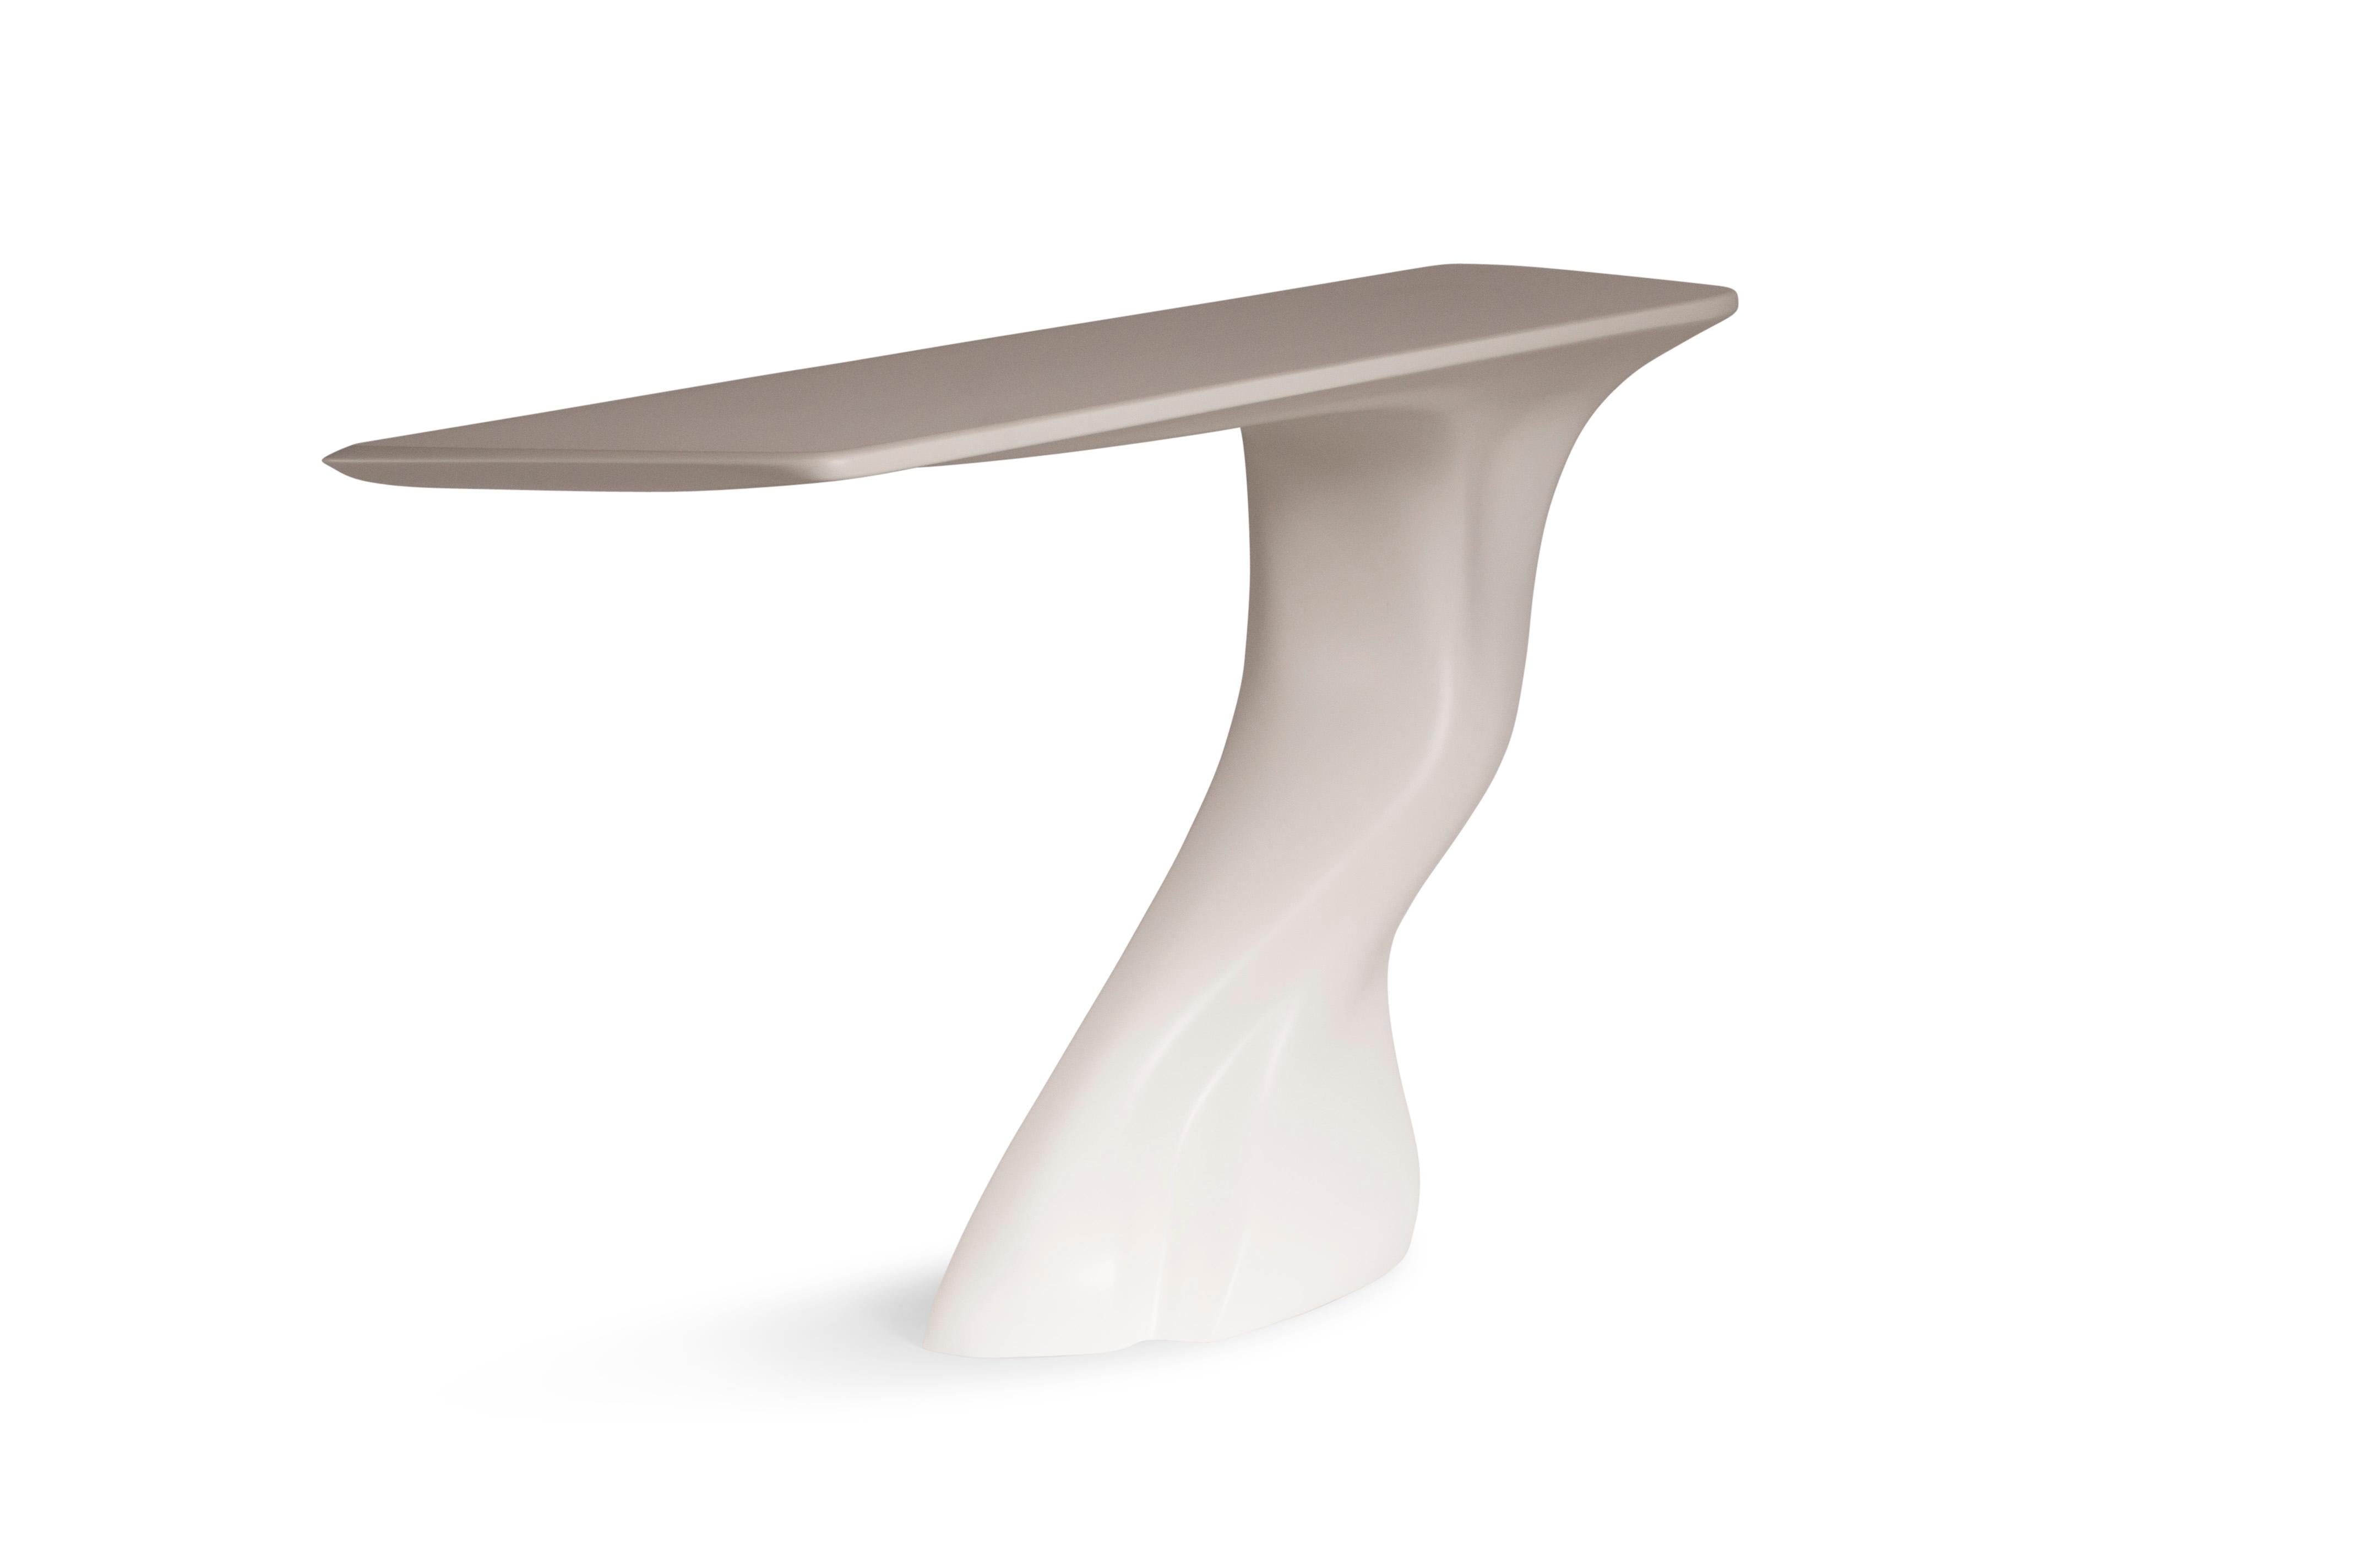 La table console Frolic est une table d'art sculpturale futuriste élégante avec une forme dynamique conçue et fabriquée par Amorph. La table console Frolic est fabriquée en bois avec une finition laquée blanche mate. Par nature, l'aspect du grain de